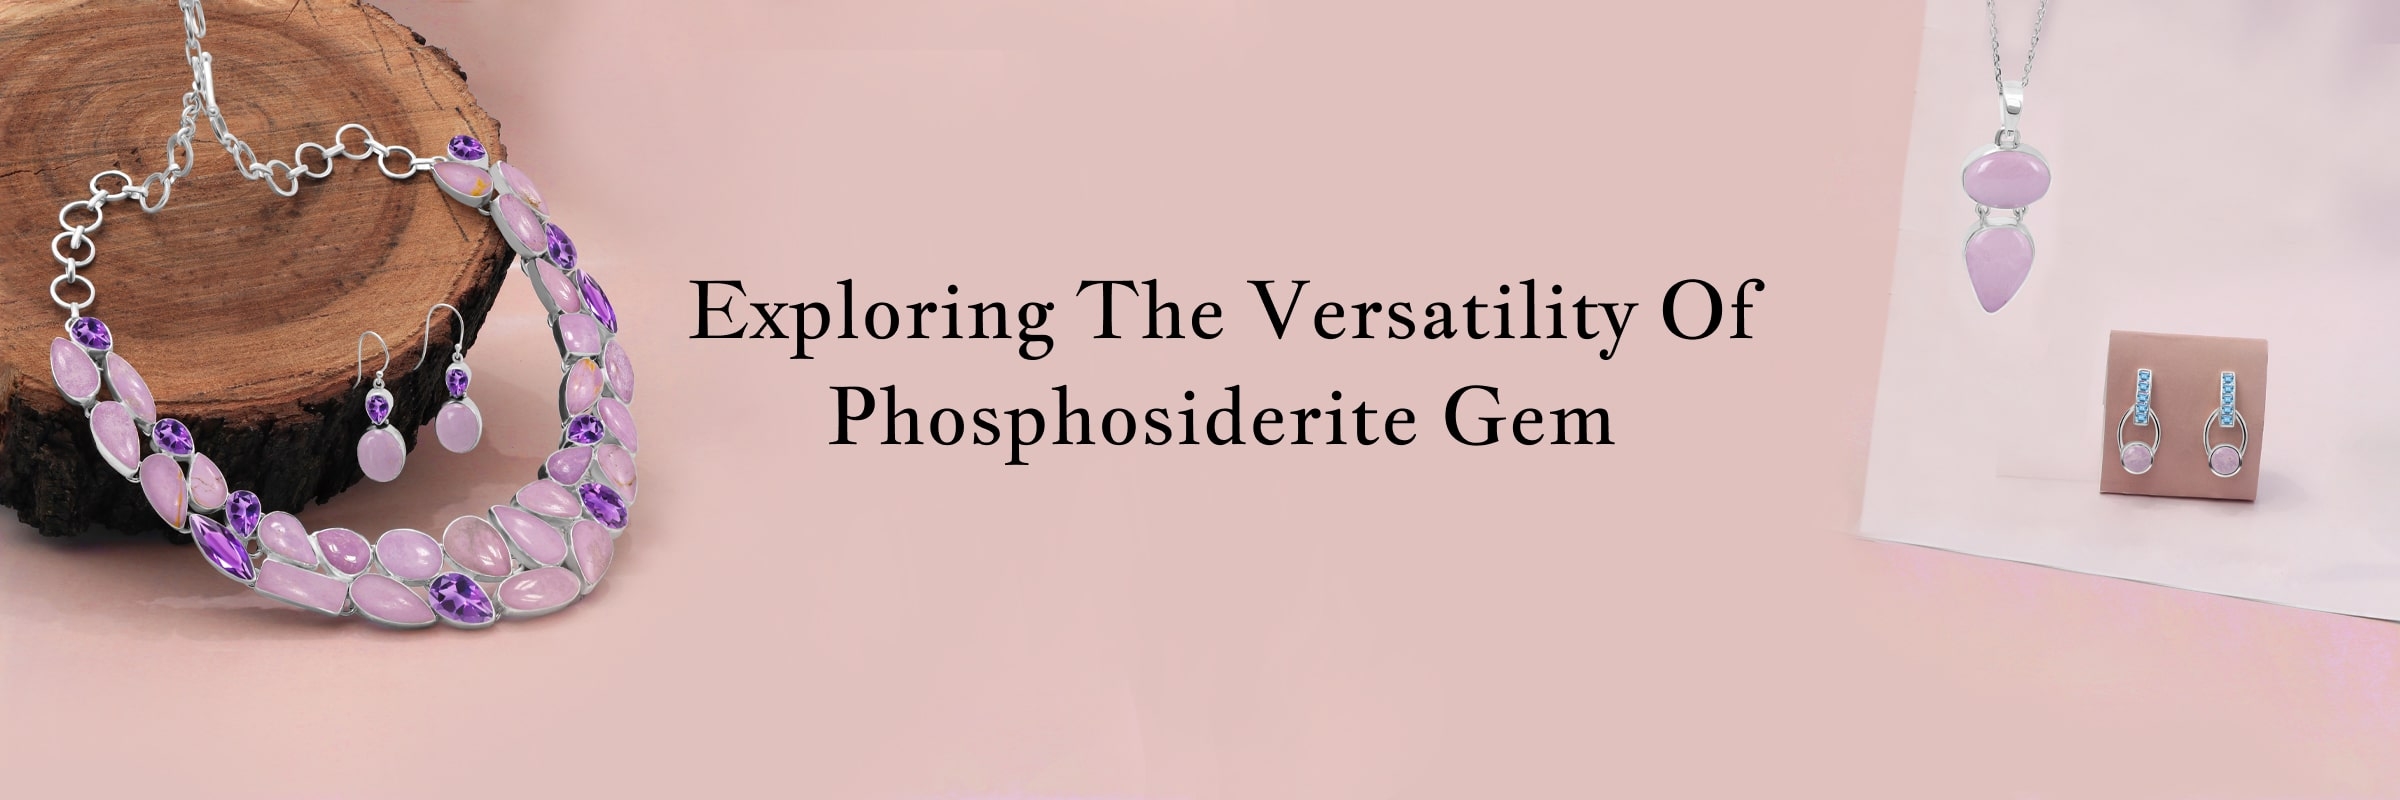 Uses of Phosphosiderite Gem